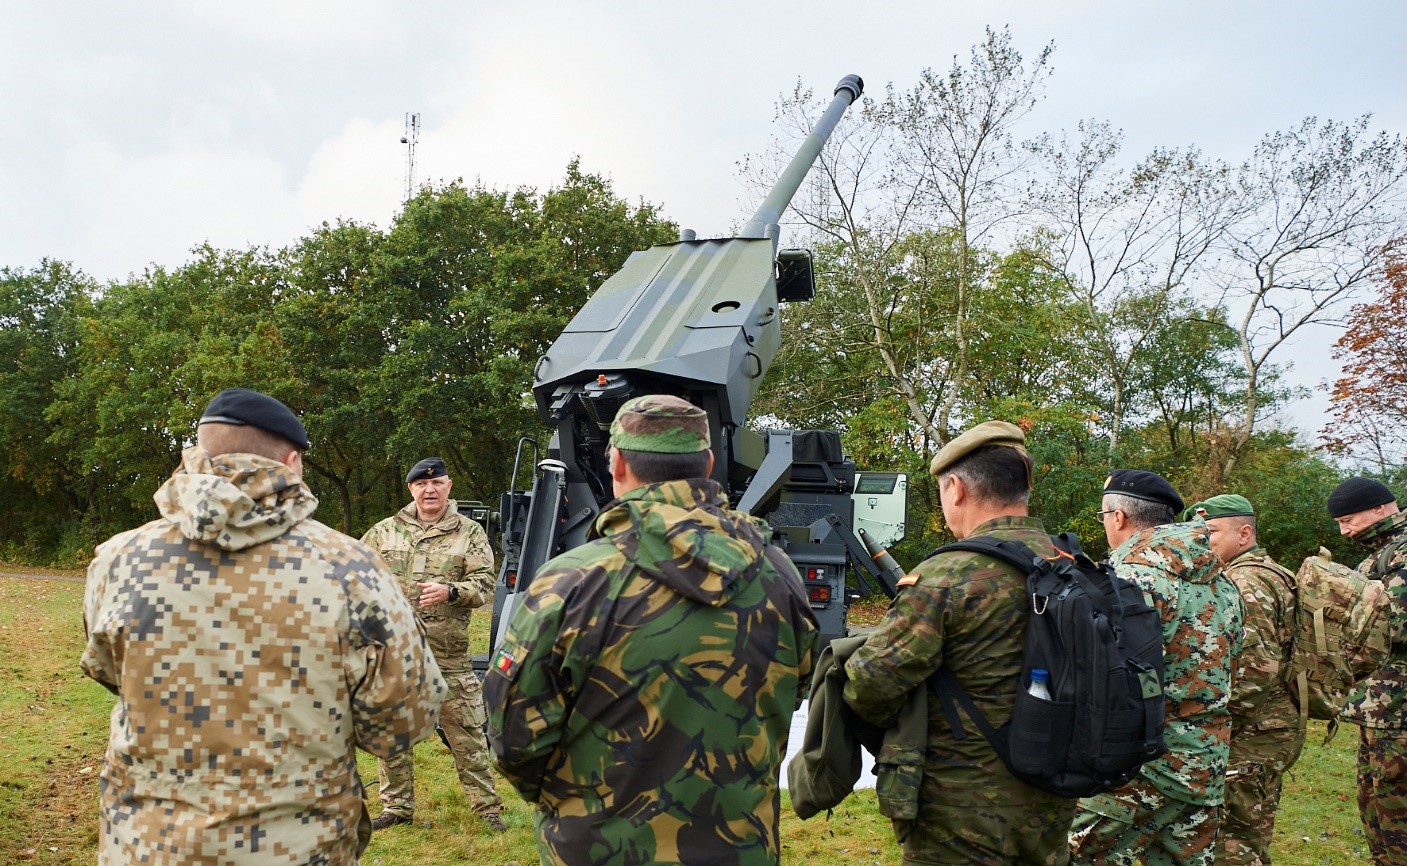 Material exhibition in Danish Artillery Regiment